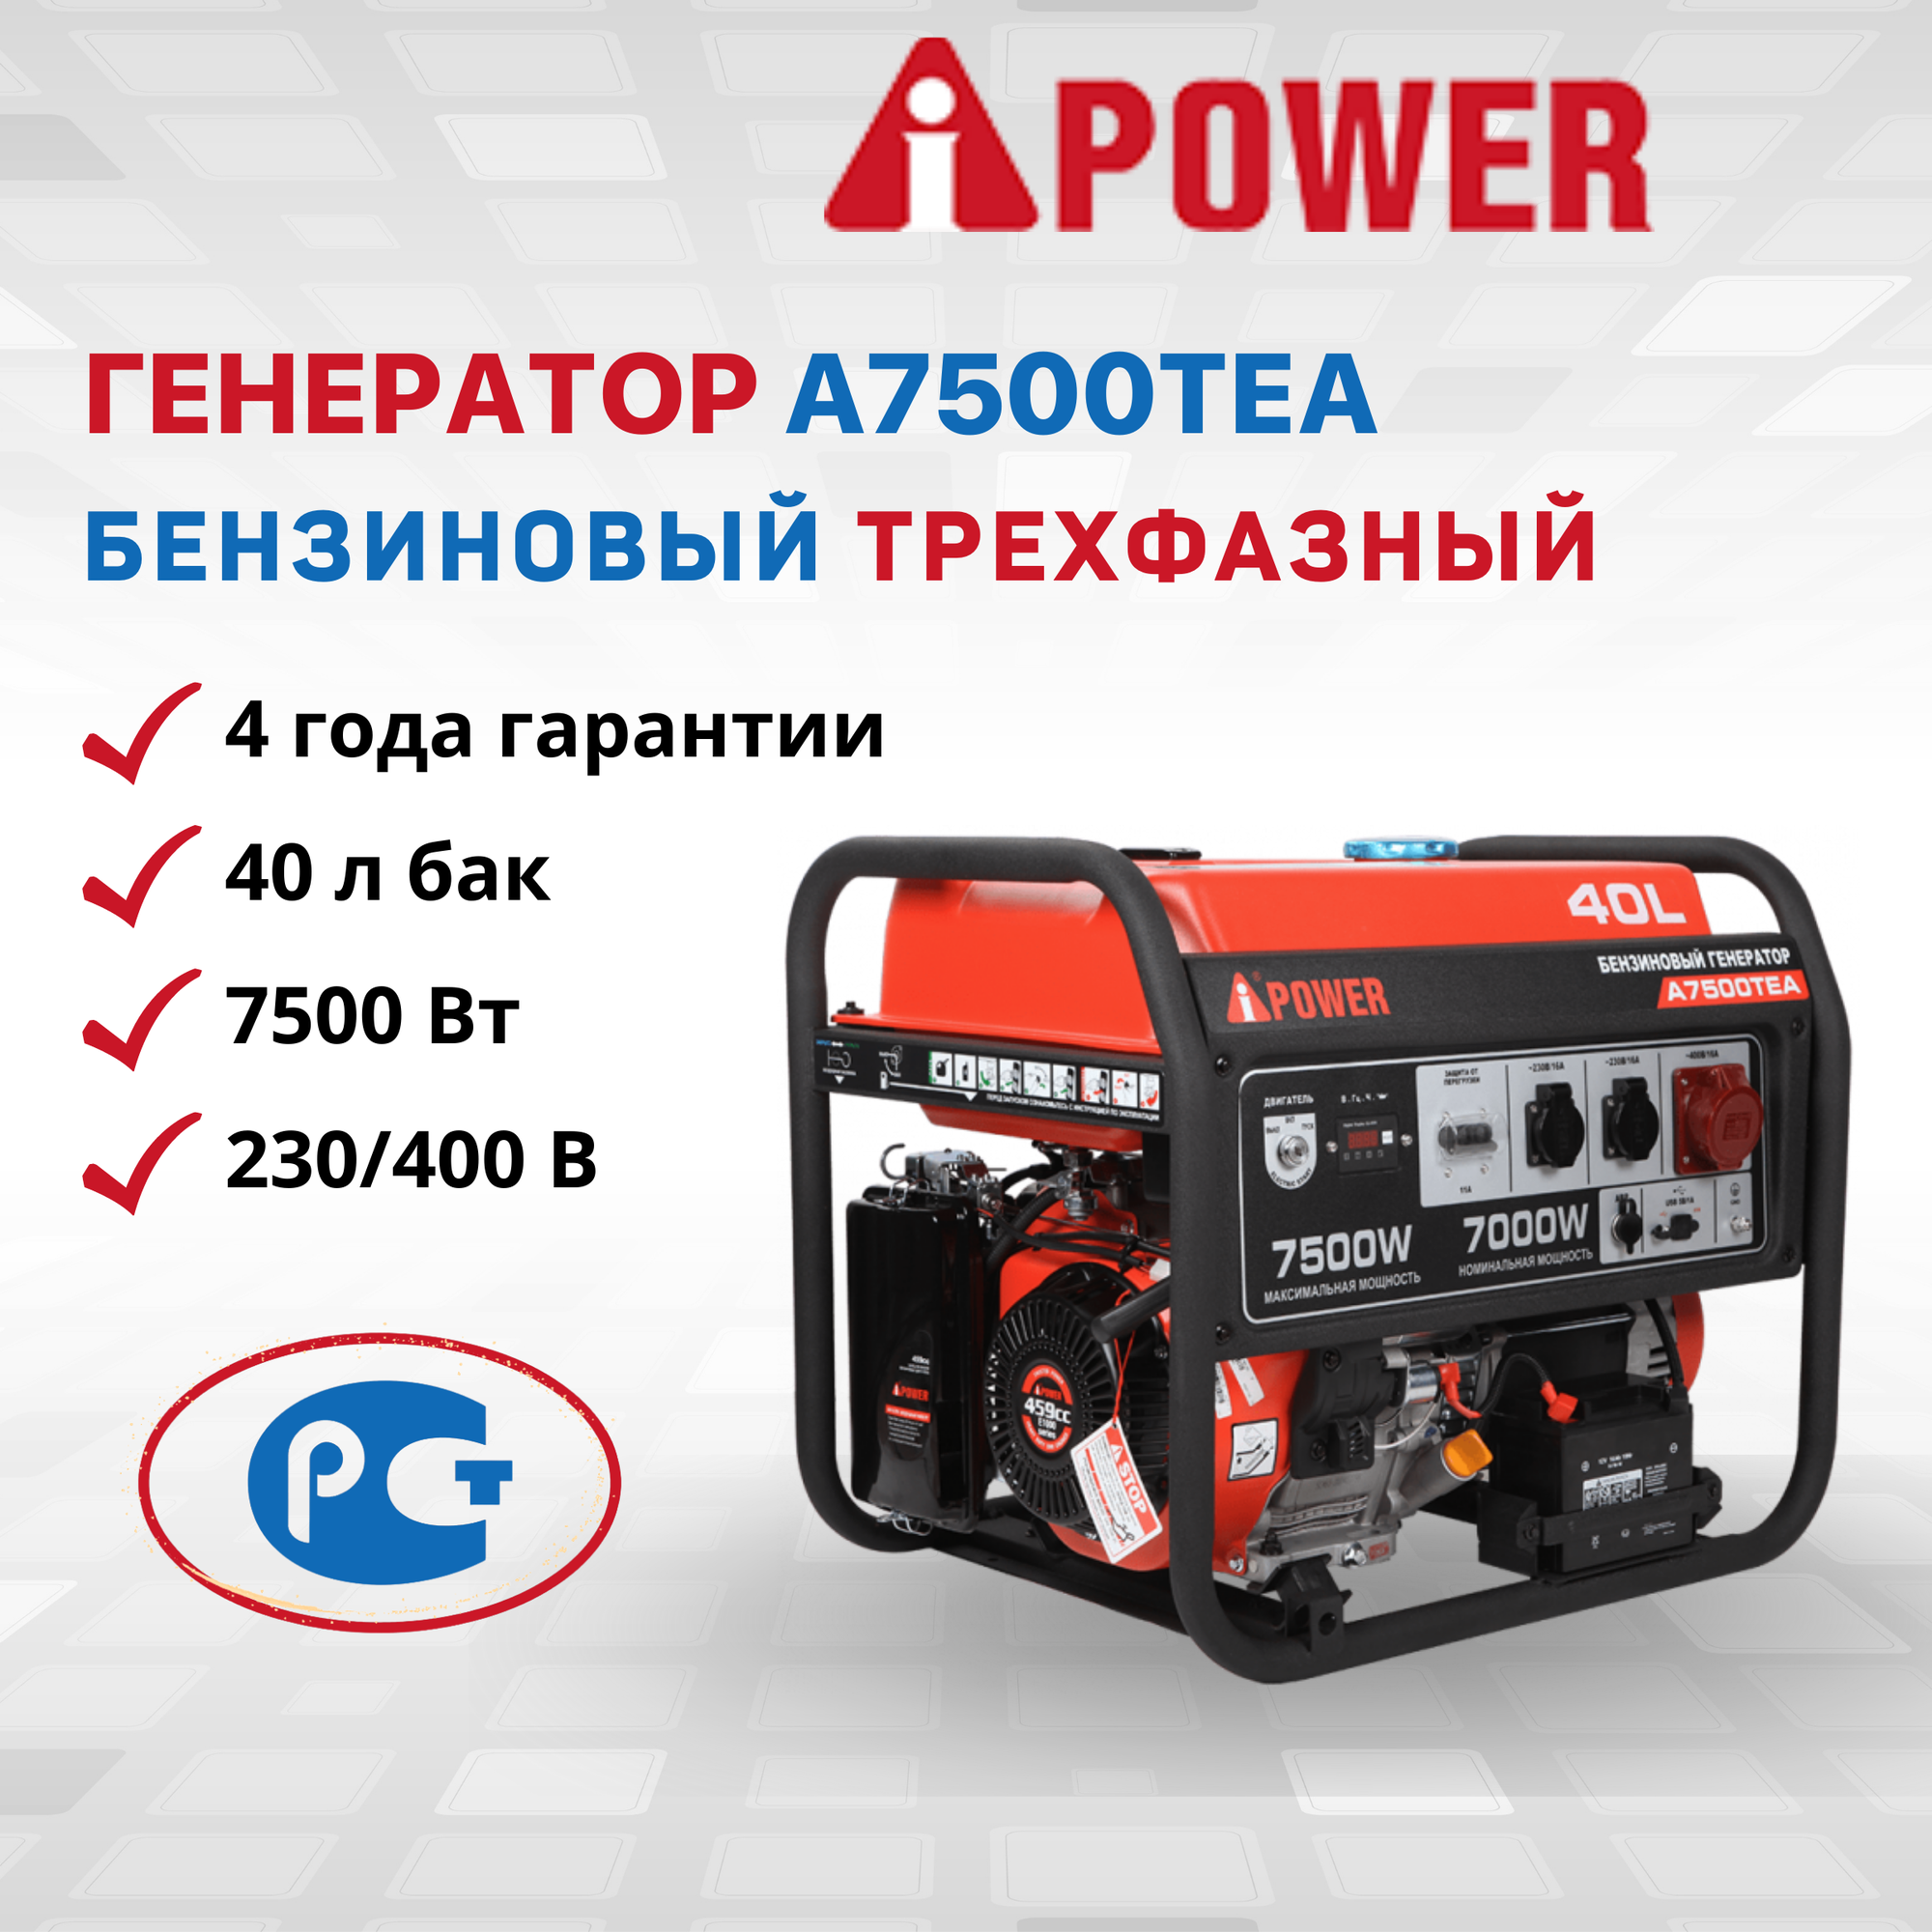 Комплект Бензиновый генератор A-iPower A7500TEA, 7 кВт (20114) + Колеса и ручка